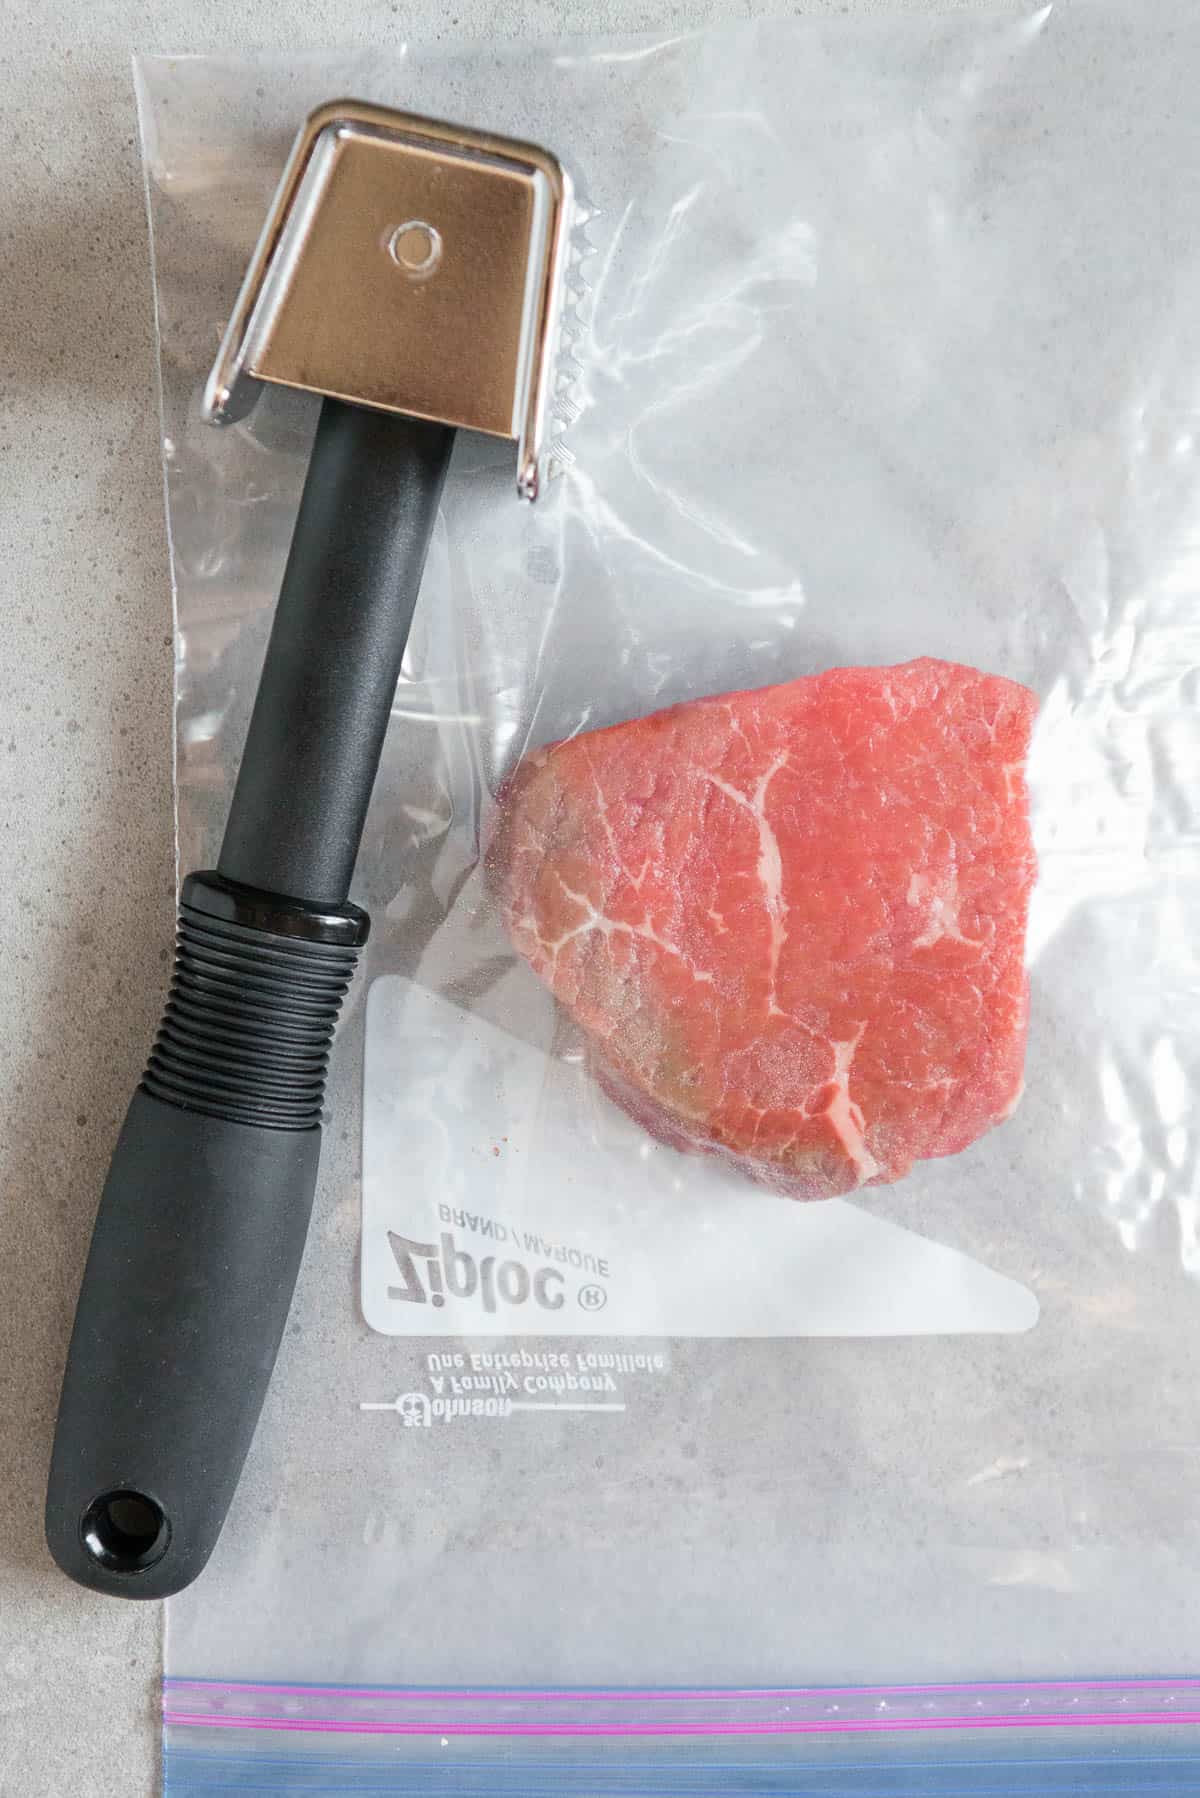 round steak in plastic bag